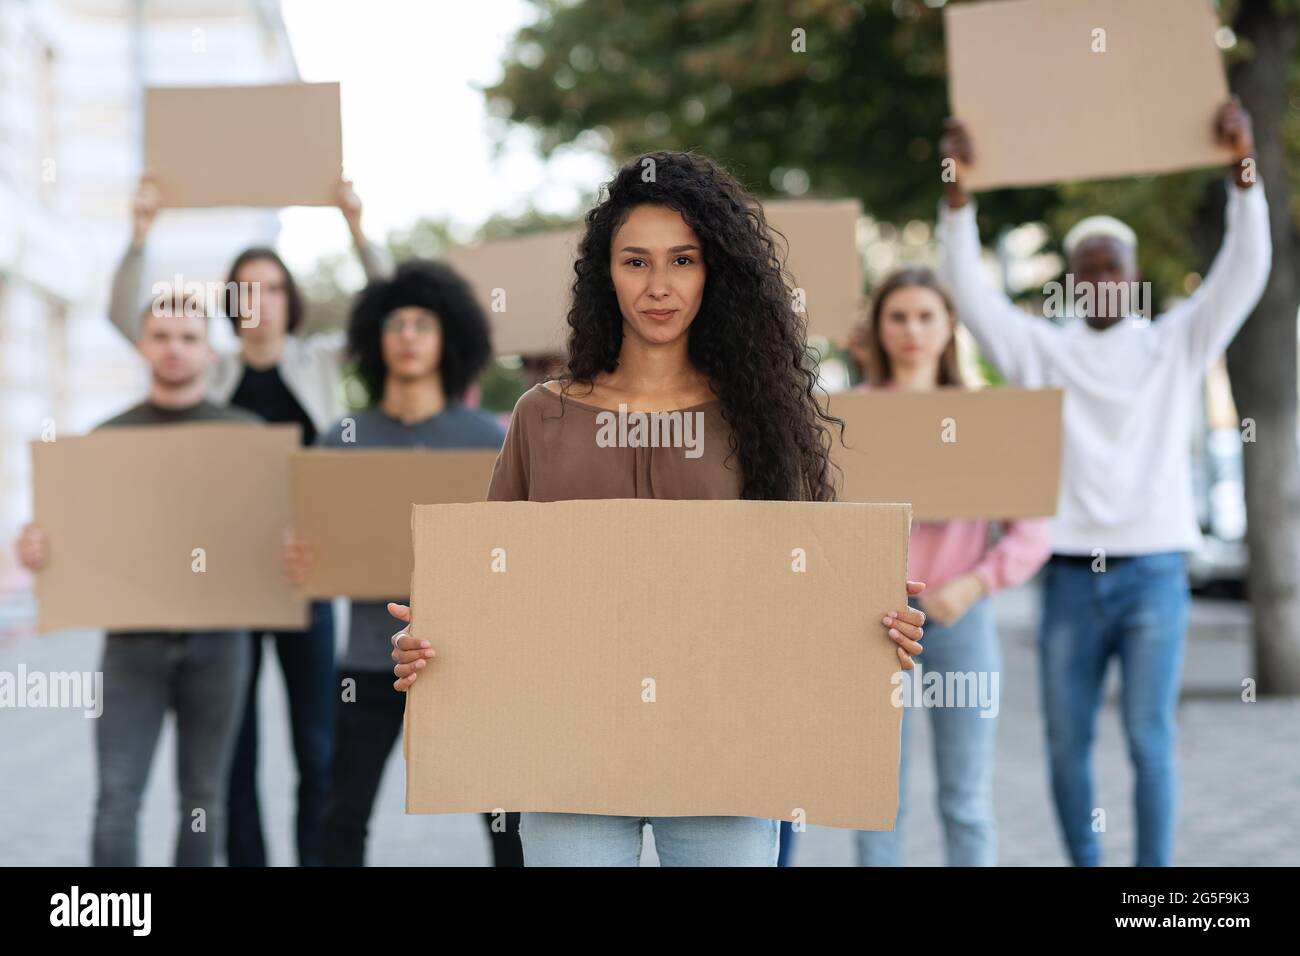 Aktive, hübsche junge Frau, die eine Gruppe von Demonstranten auf der Straße führt. Internationale, vielfältige Gruppe von Menschen mit leeren Plakaten, die gegen Brummen protestierten Stockfoto